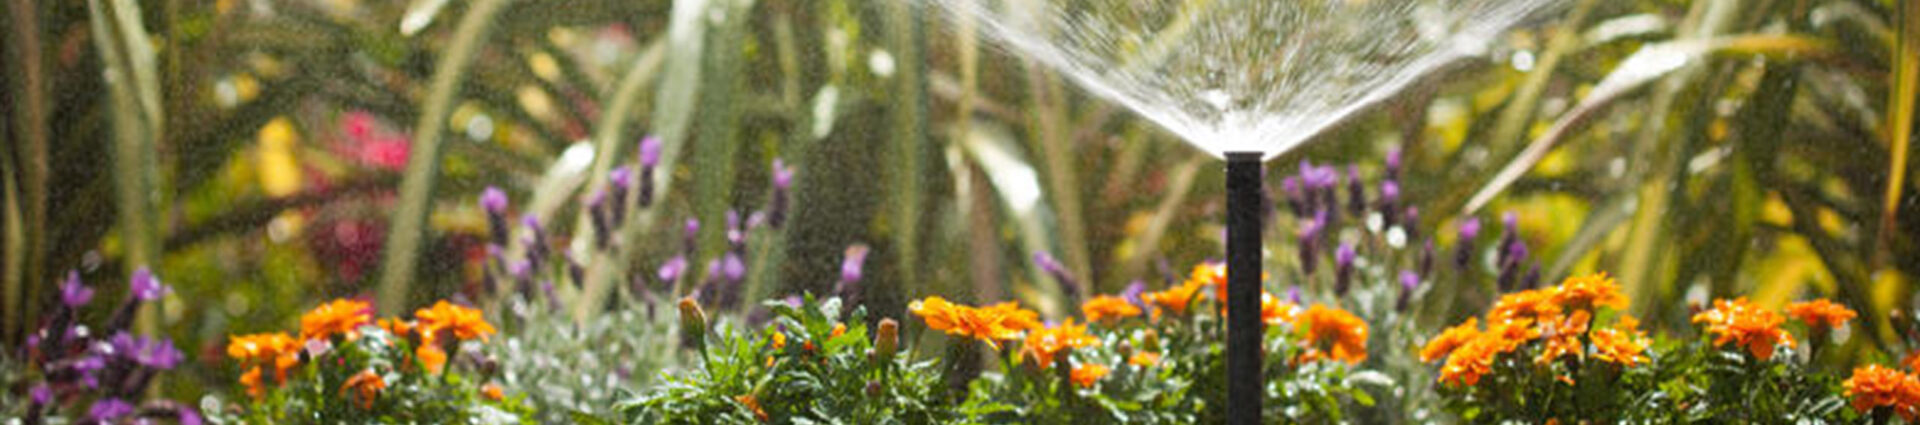 irrigation system installer